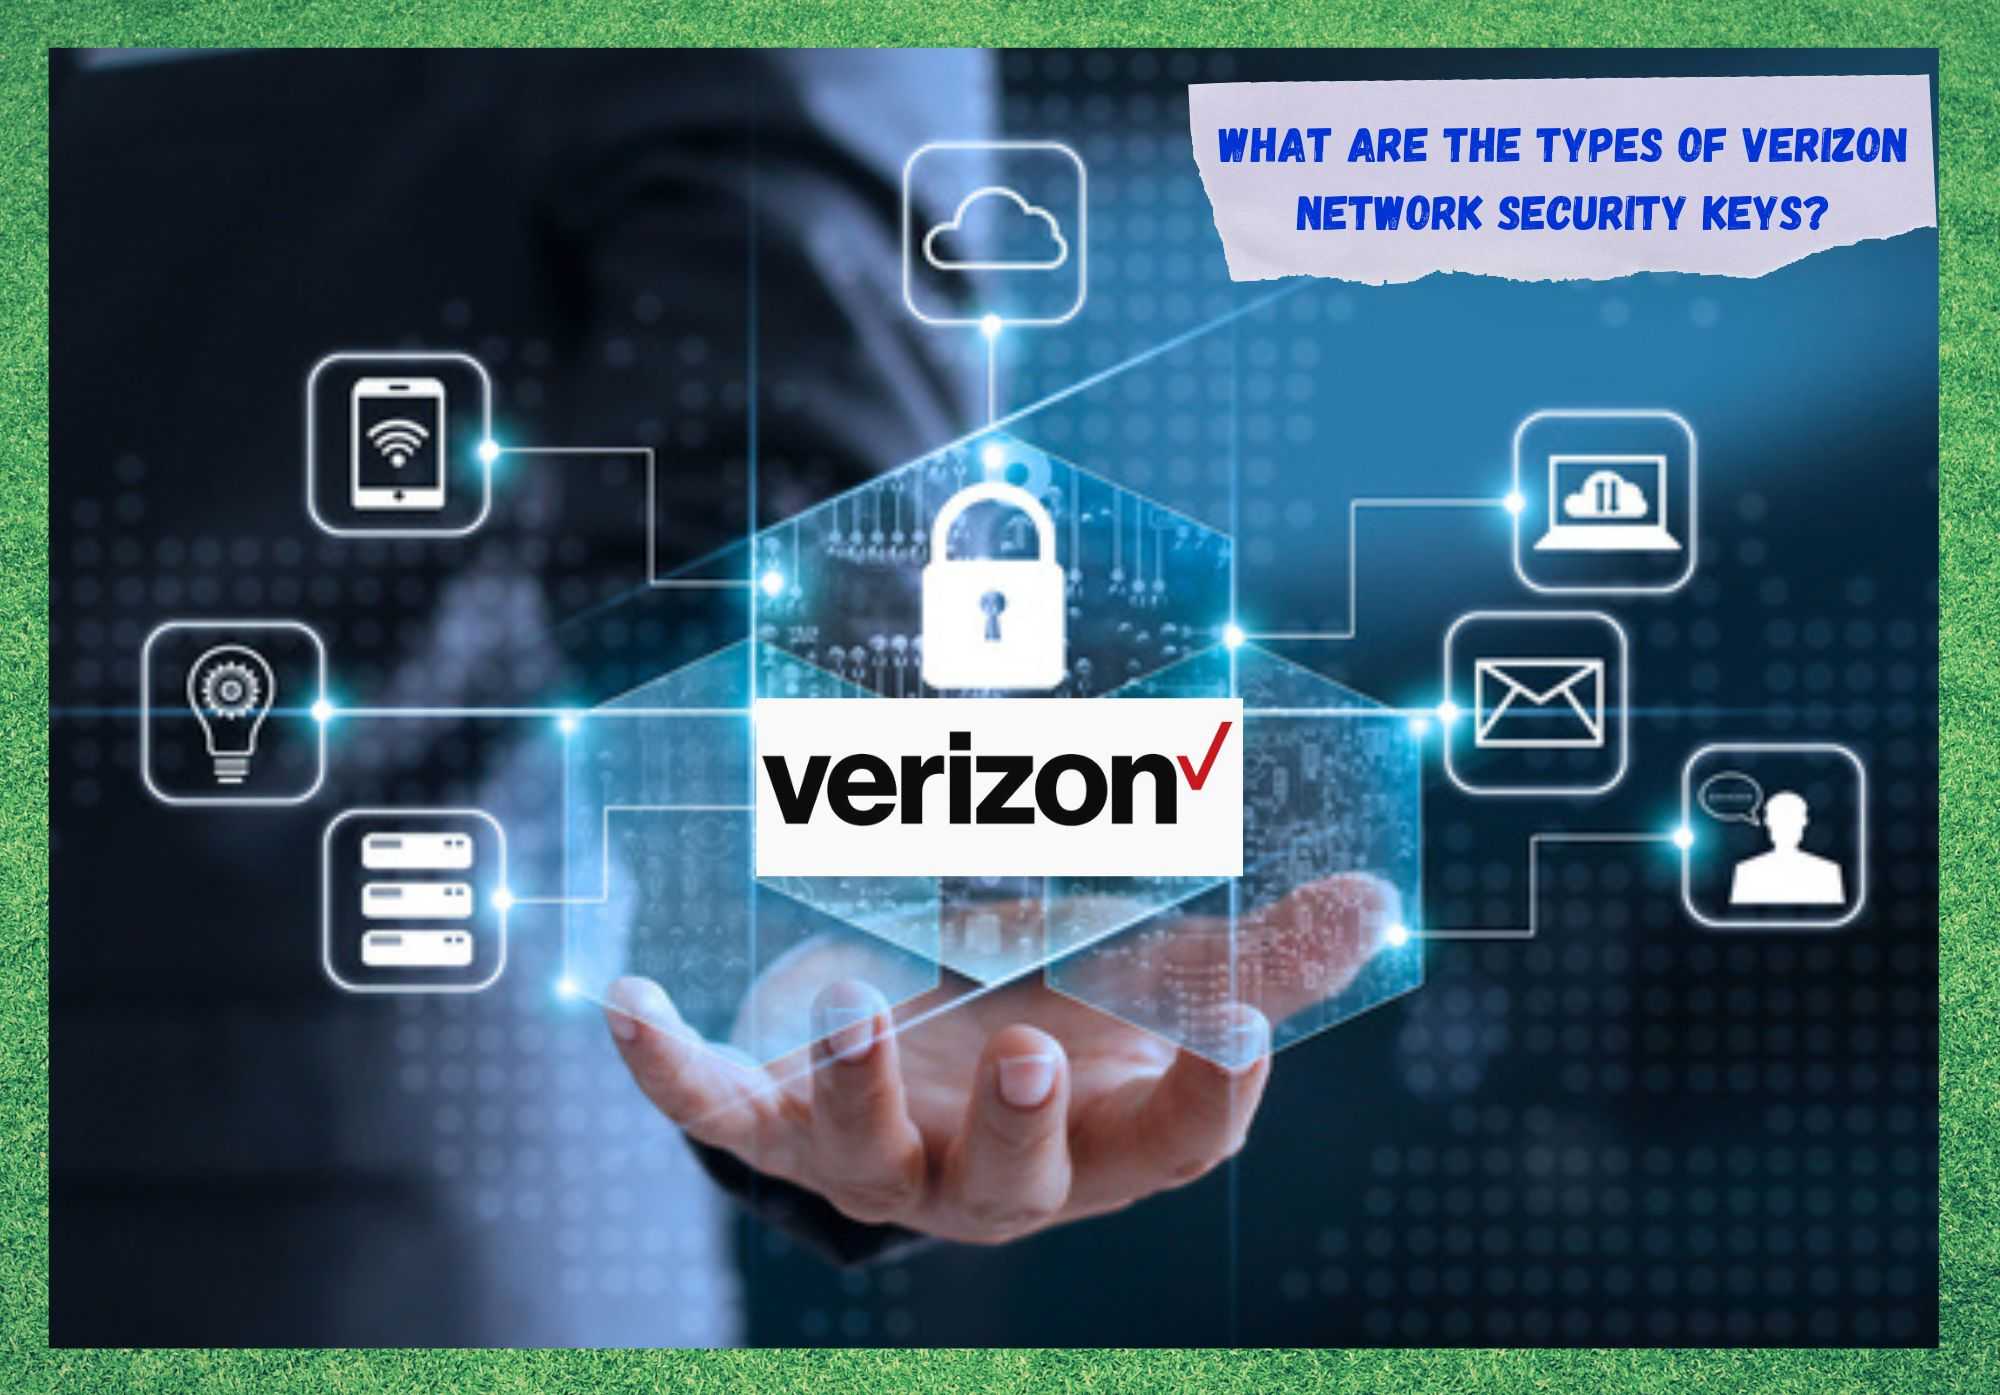 Cili është çelësi i sigurisë së rrjetit Verizon? (E shpjeguar)